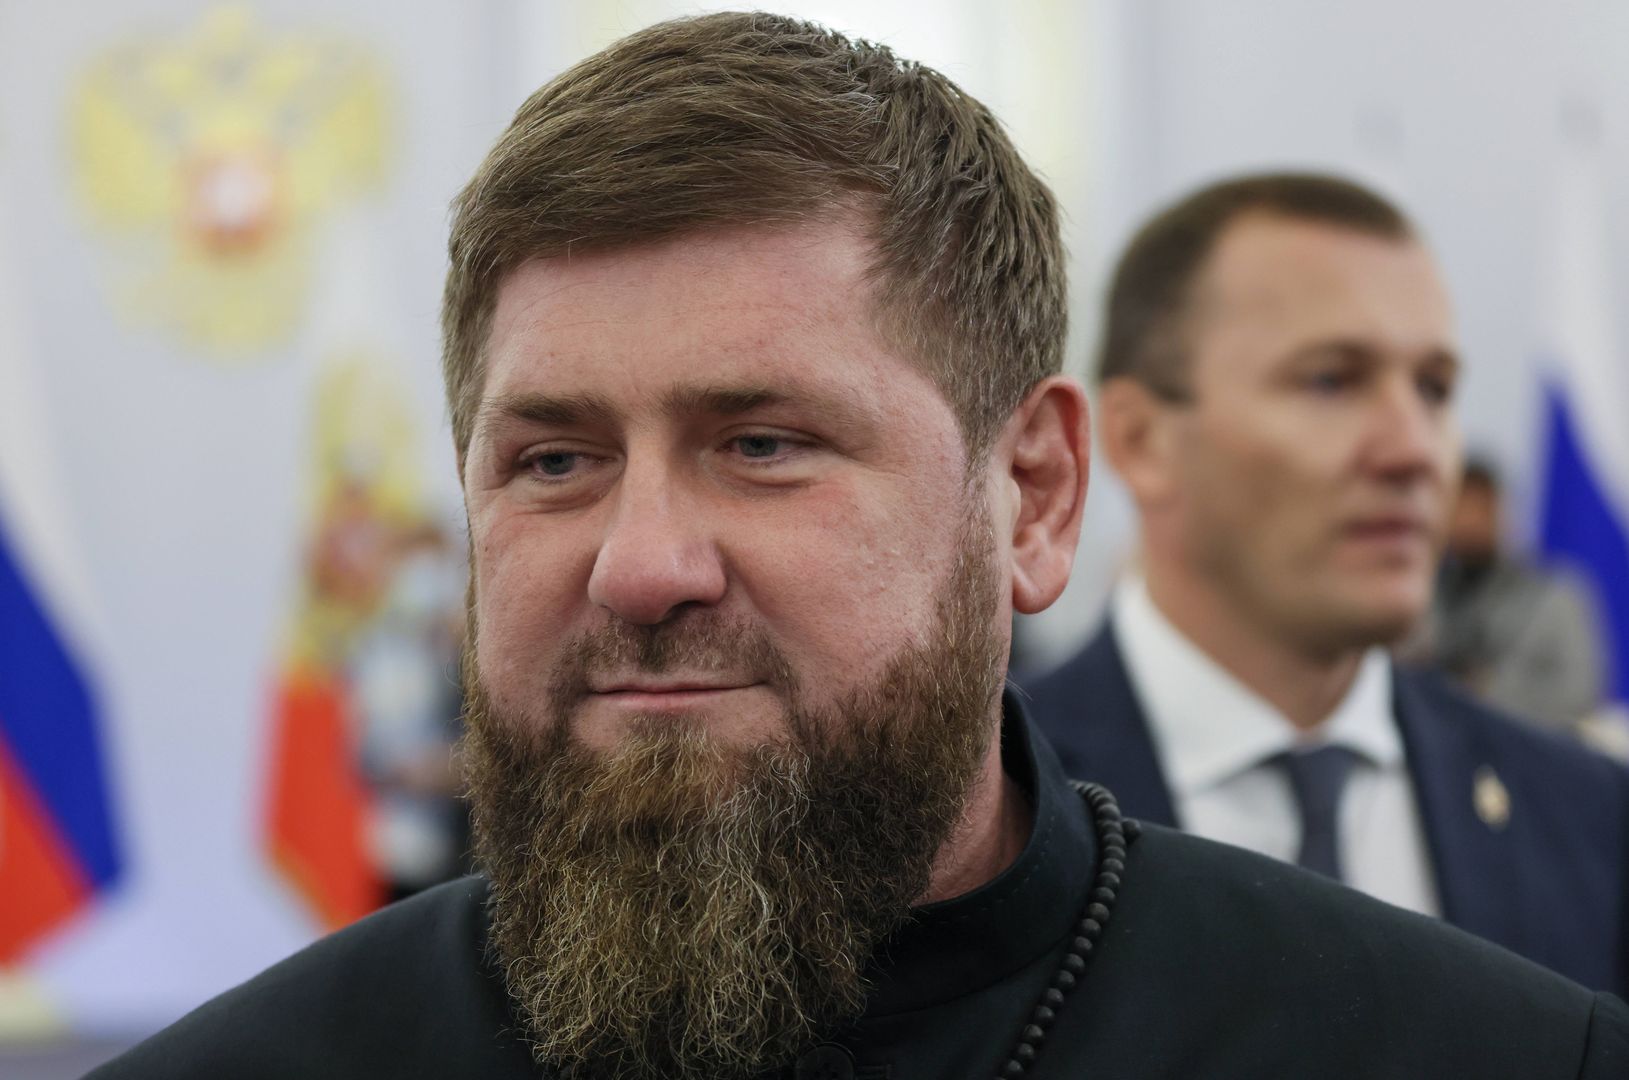 Ukraina przygotowuje się do kontrofensywy. Kadyrow "gorąco prosi"